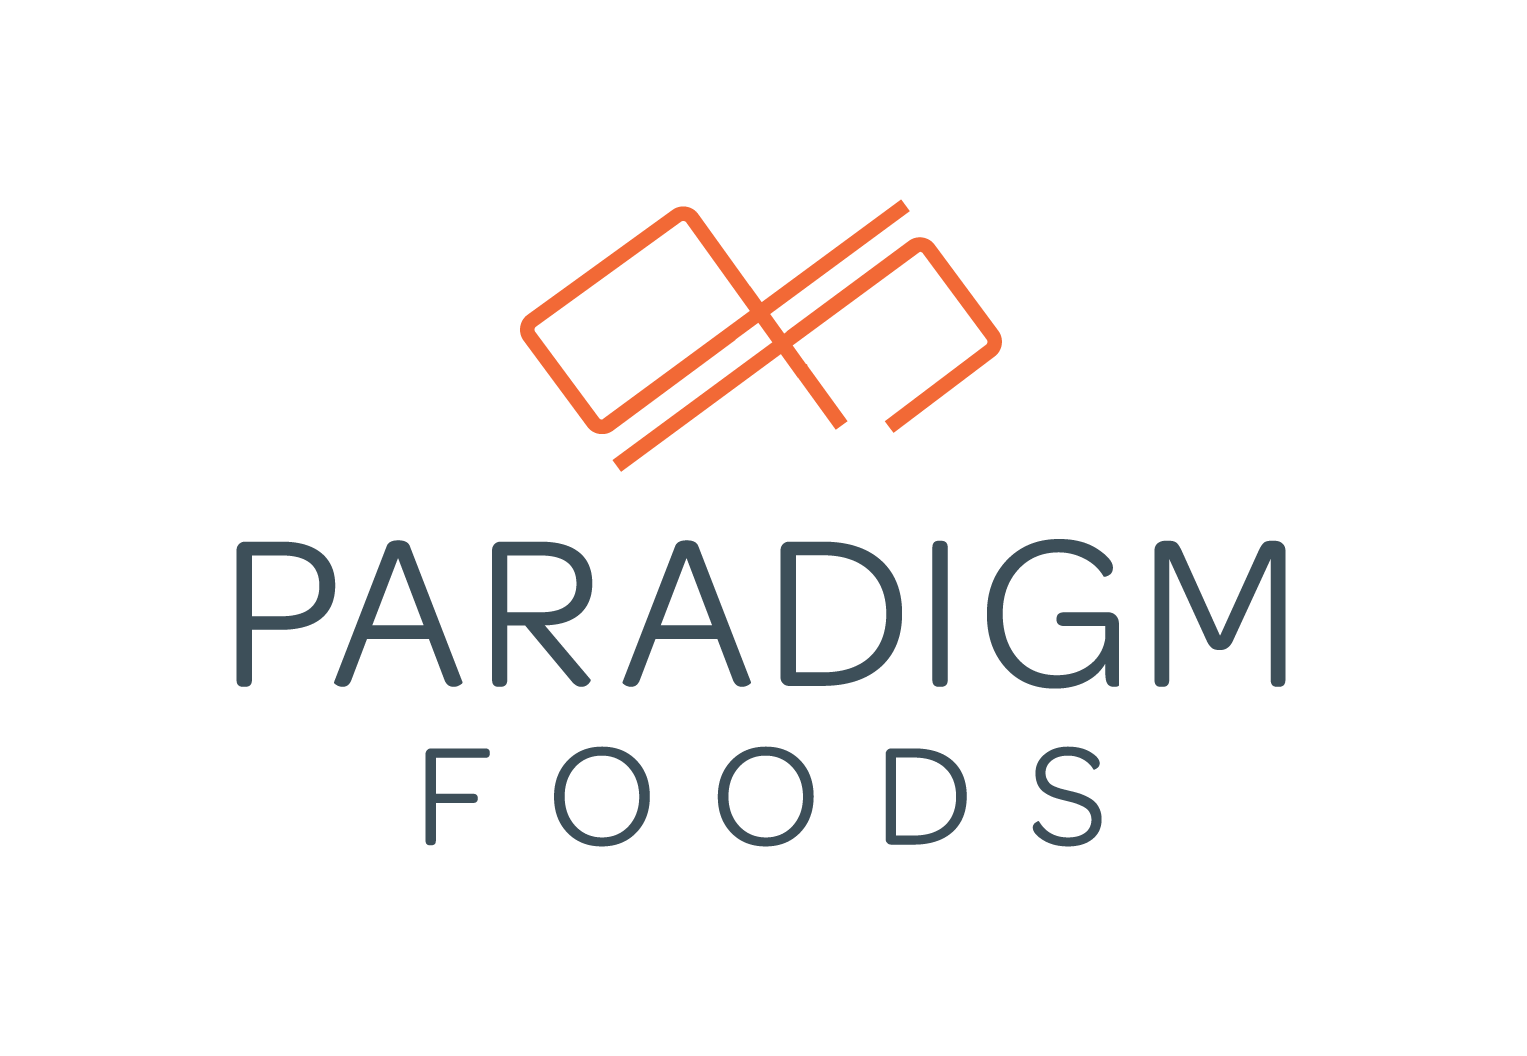 Paradigm Foods